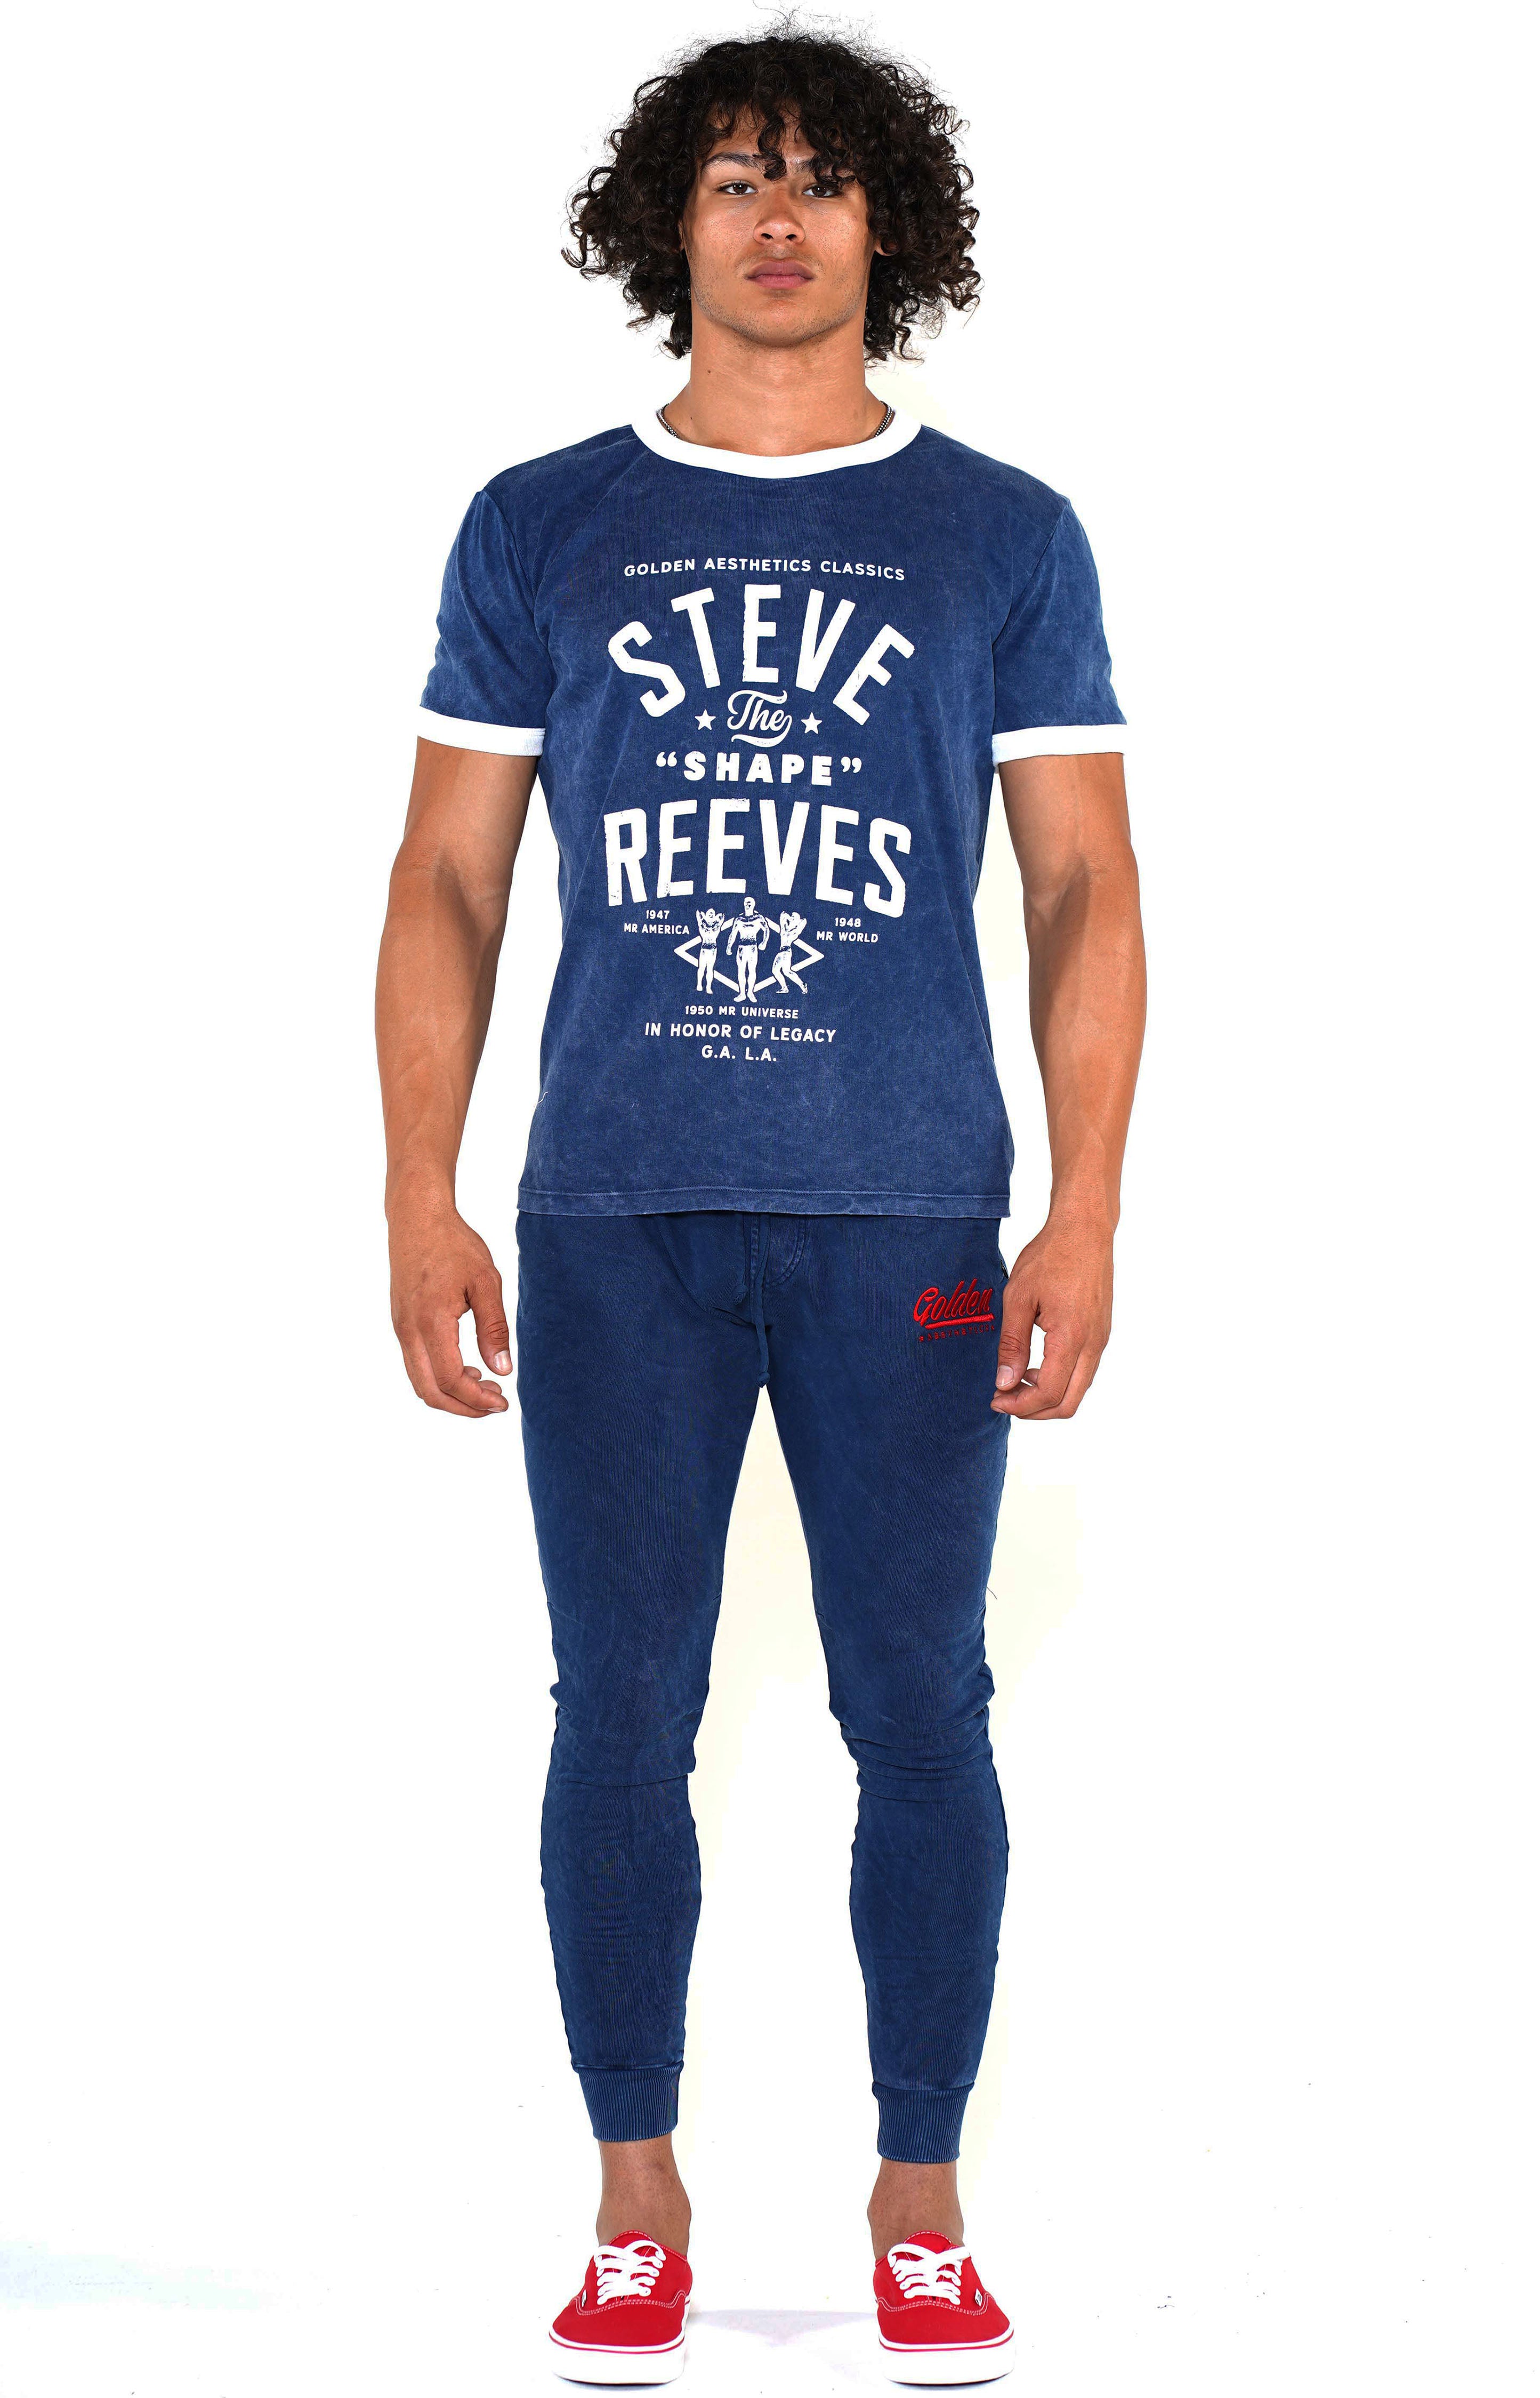 Men's Navy/White Steve Reeves Ringer T-Shirt - Golden Aesthetics